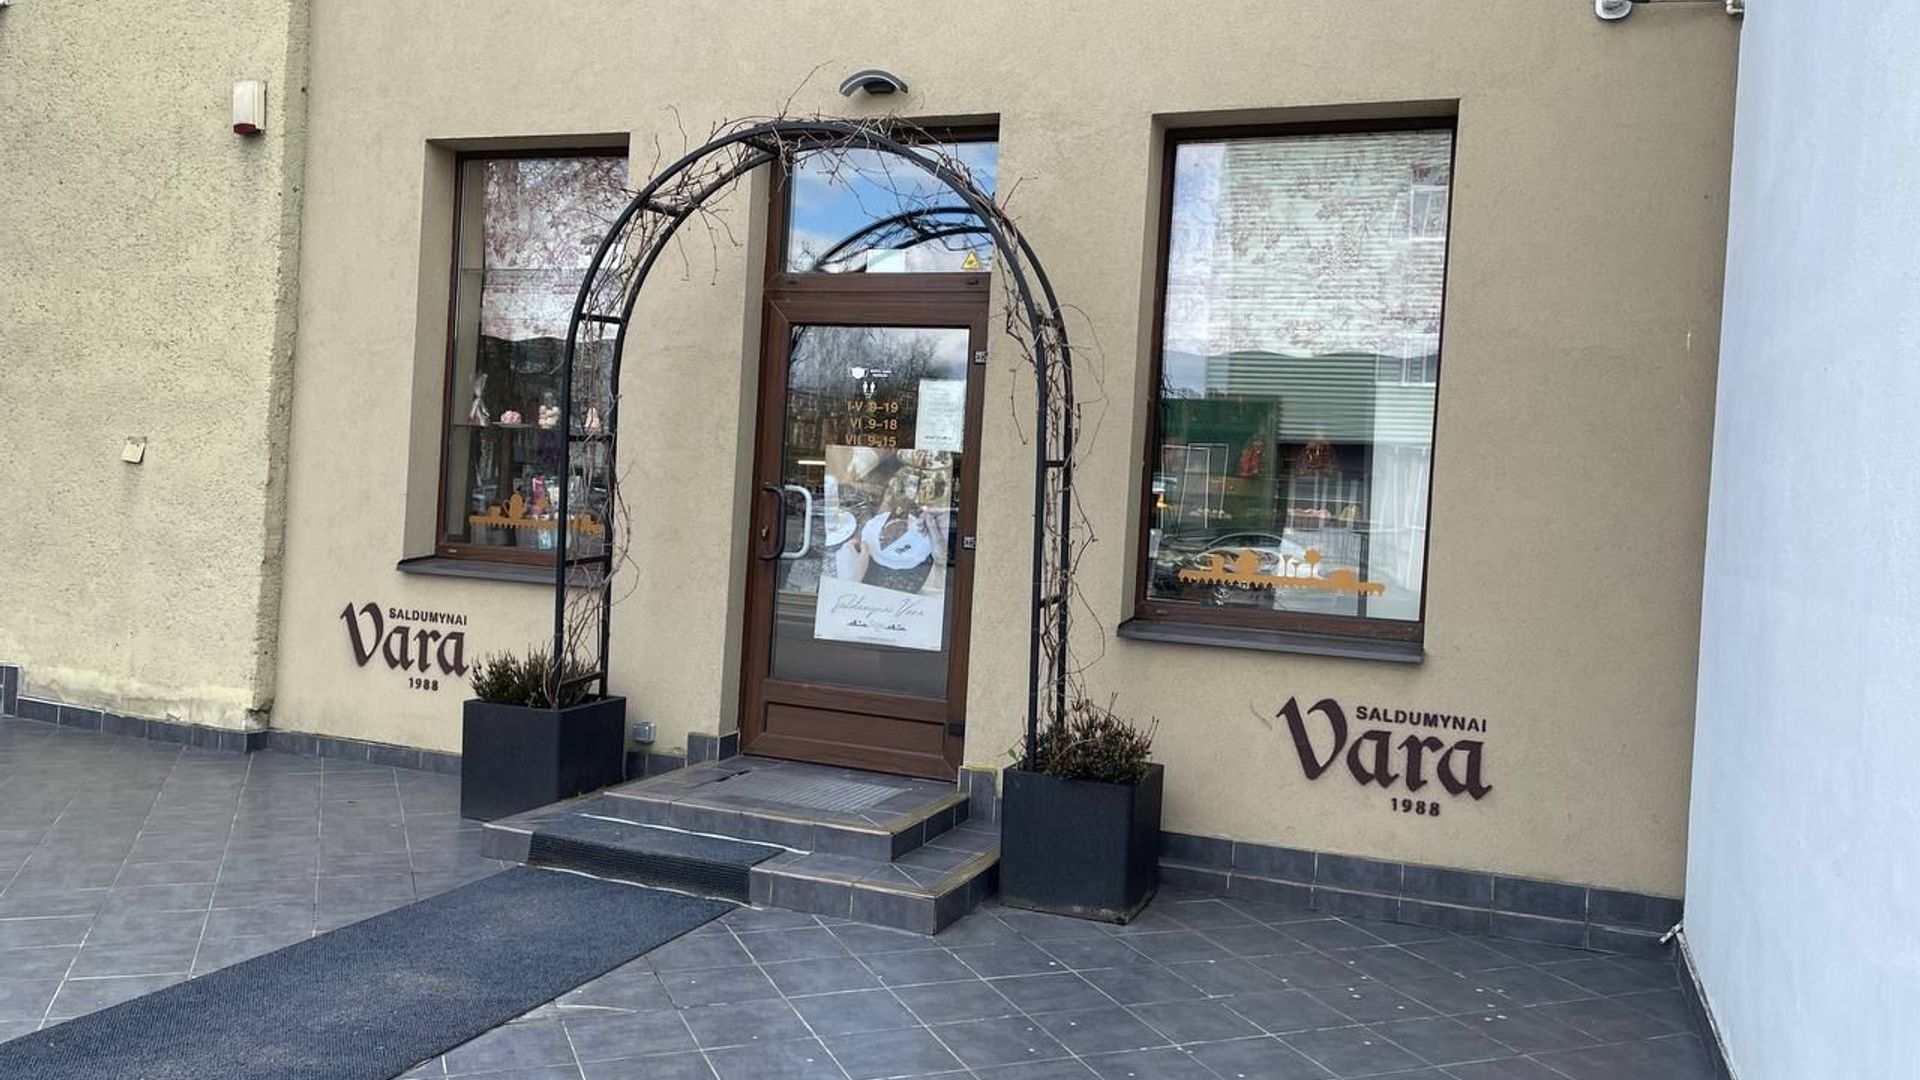 Bakery Vara